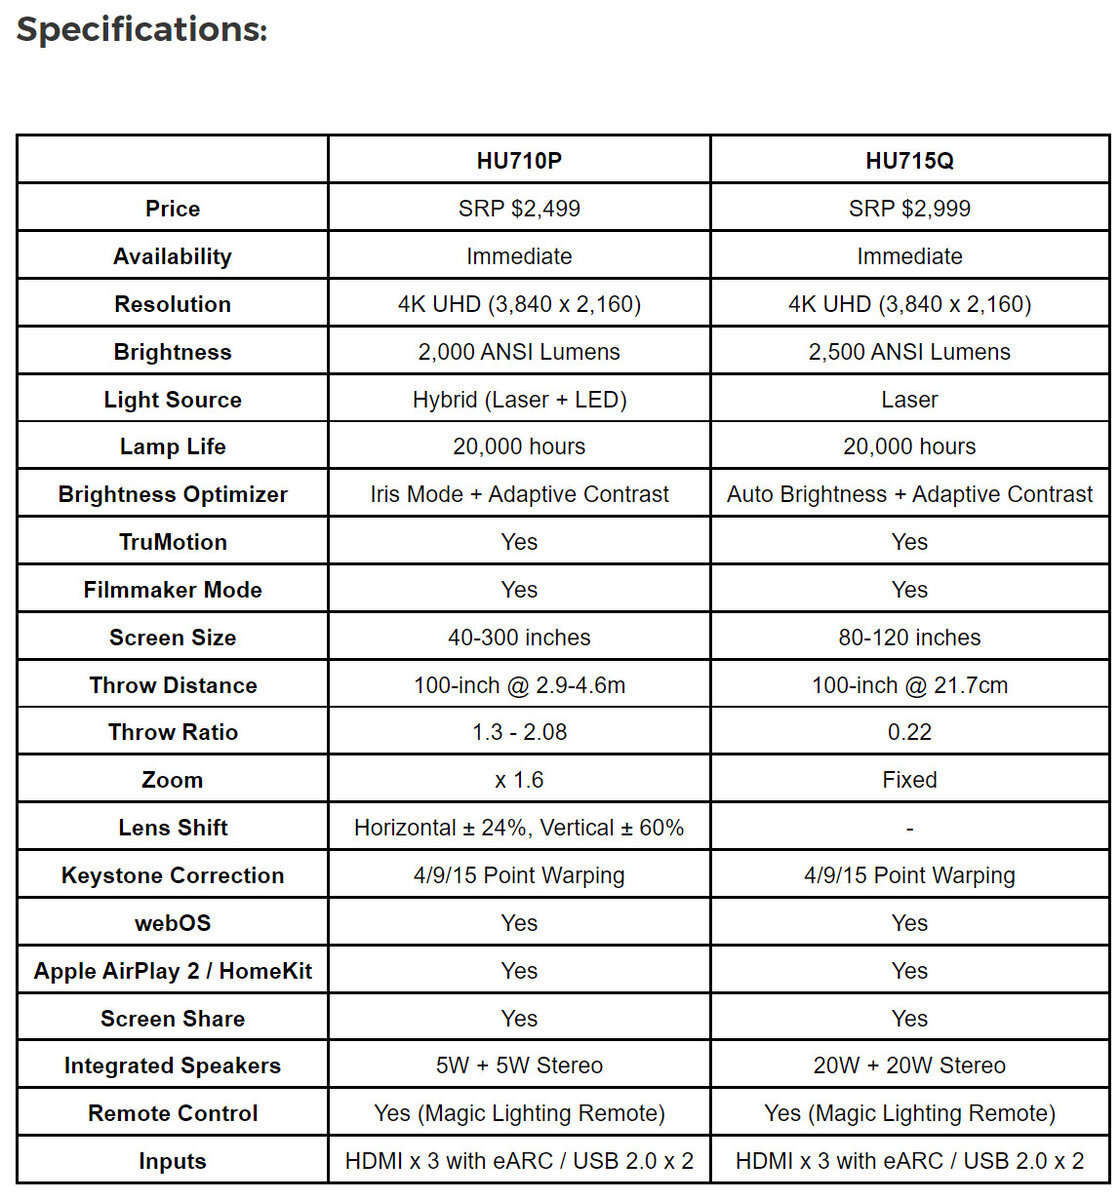 Huawei представила моноблок MateStation X, с 28-дюймовым дисплеем IPS и разрешением 3840 x 2560 пикселей. Аппаратная часть состоит из процессора AMD Ryzen 5 5600H, ОЗУ 16 ГБ и NVMe-накопителя на 1 ТБ.-2-3